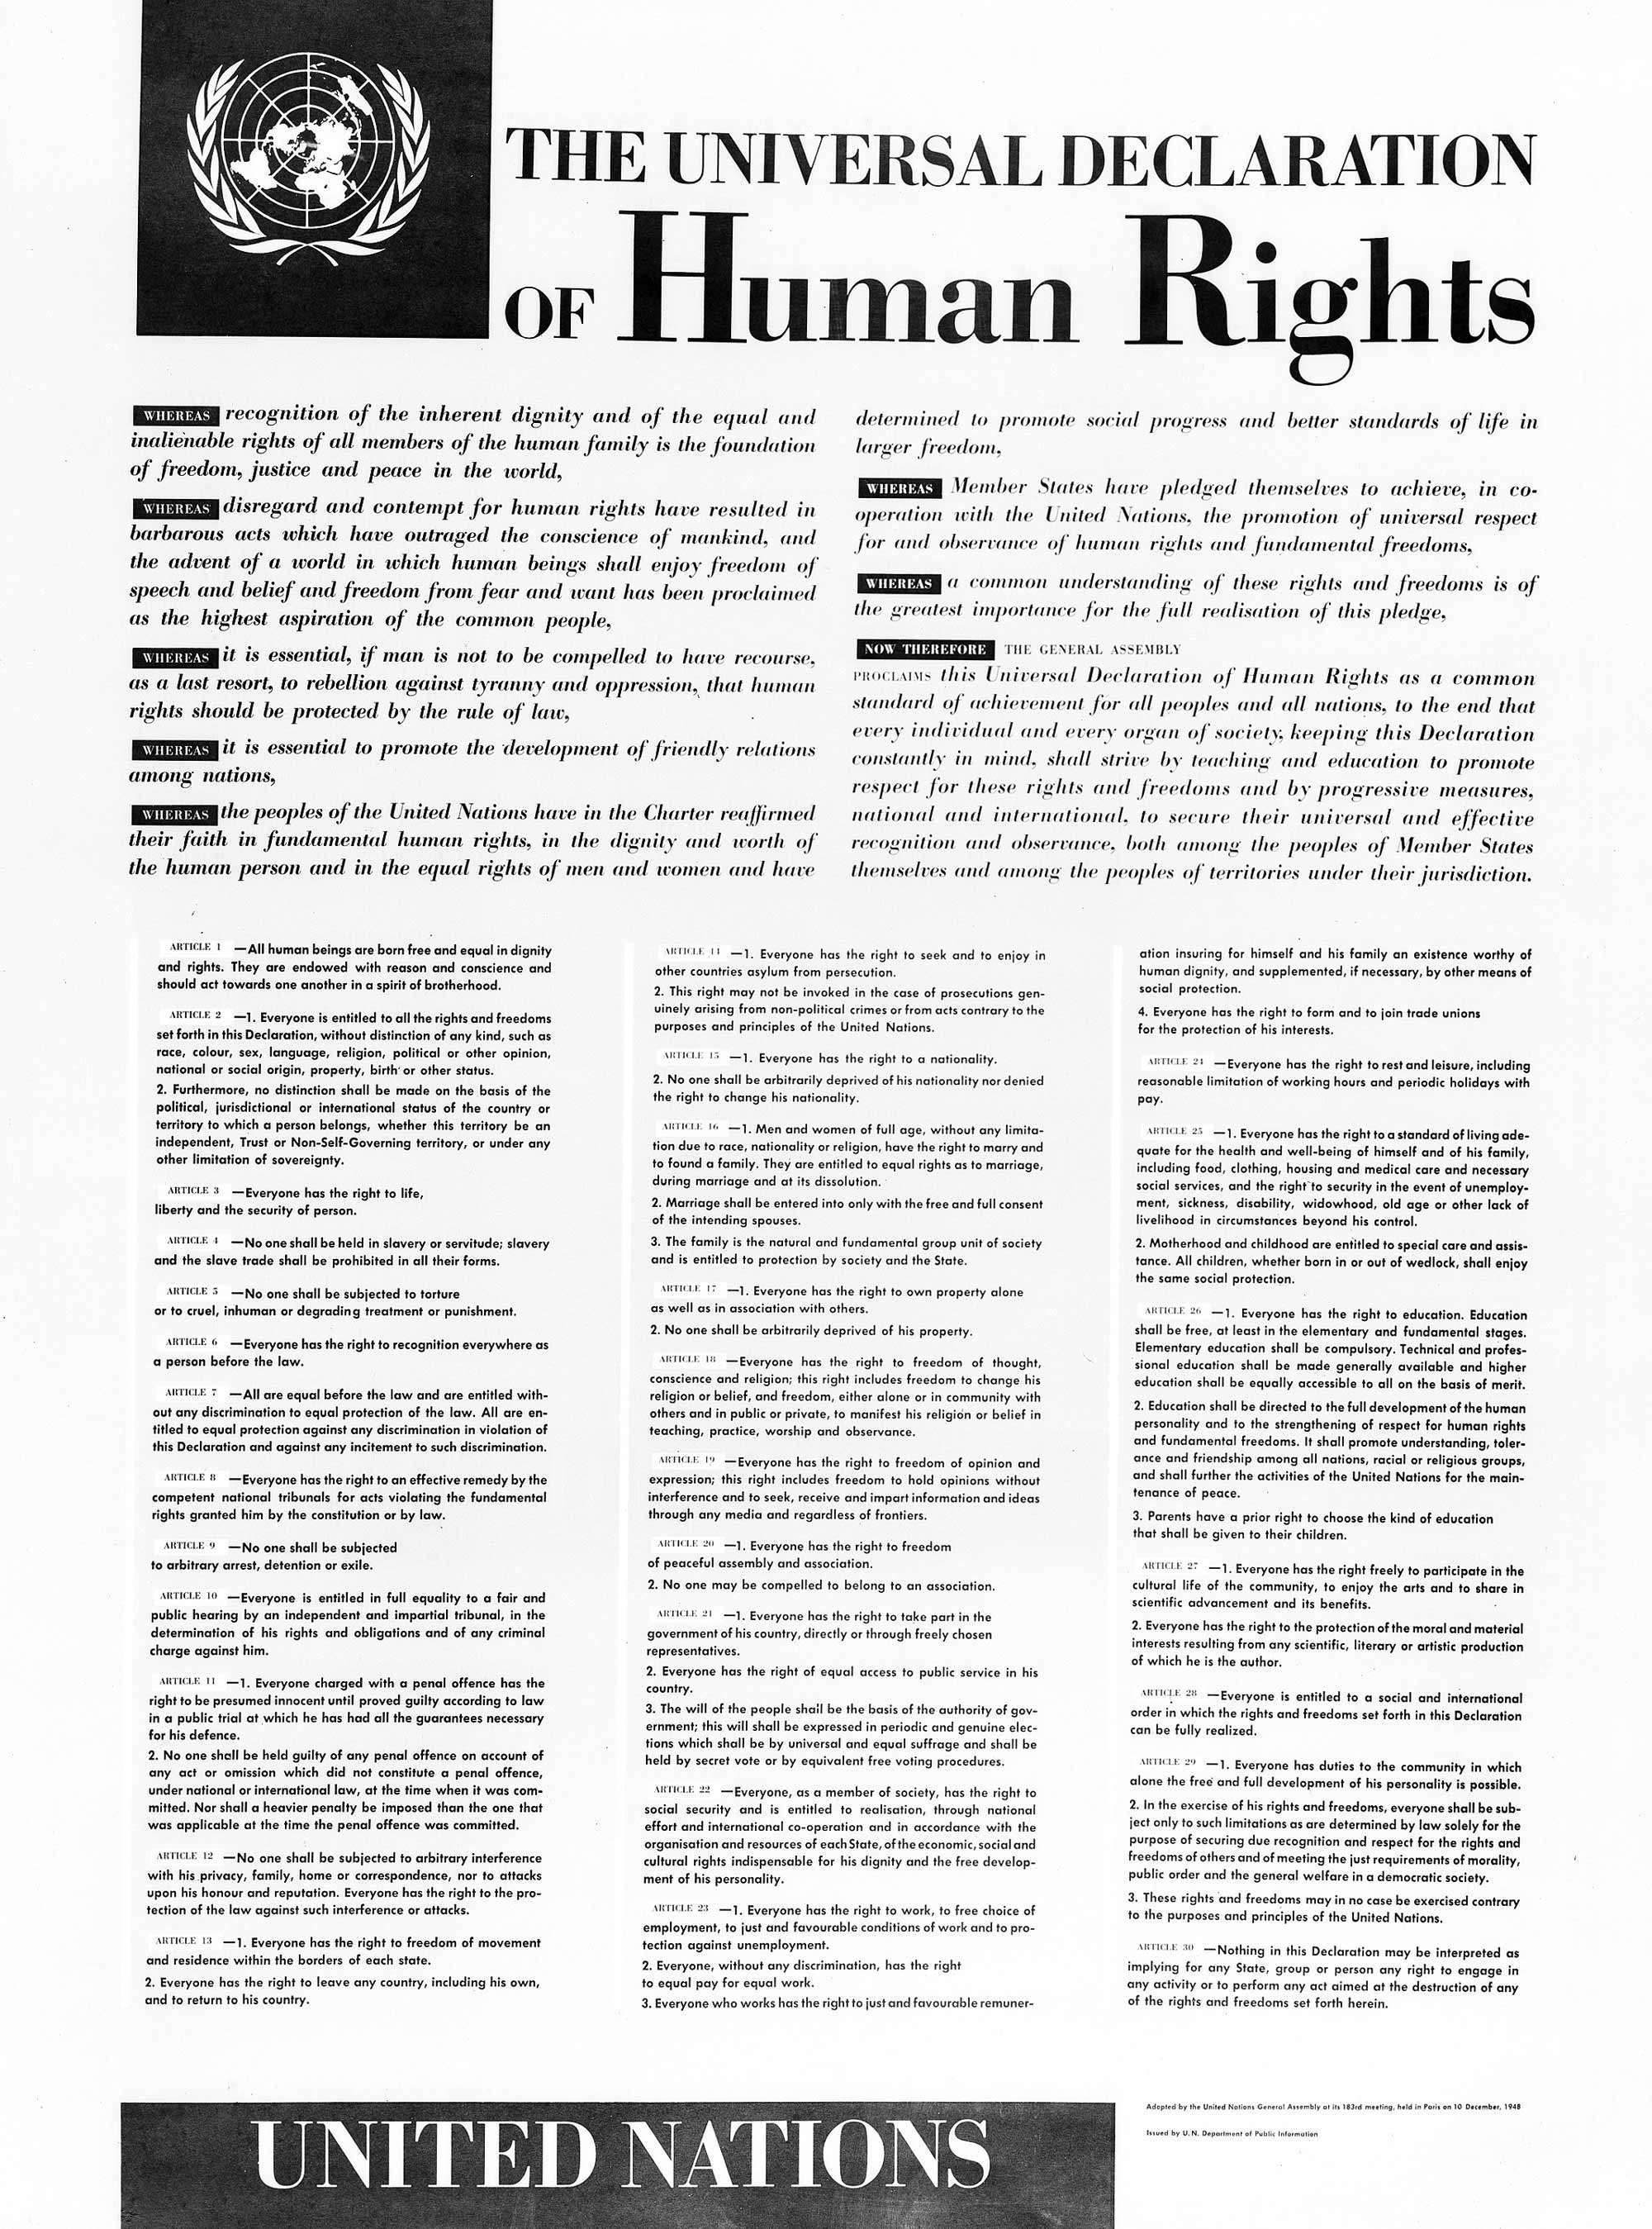 Die Allgemeine Erklärung der Menschenrechte vom 10. Dezember 1948